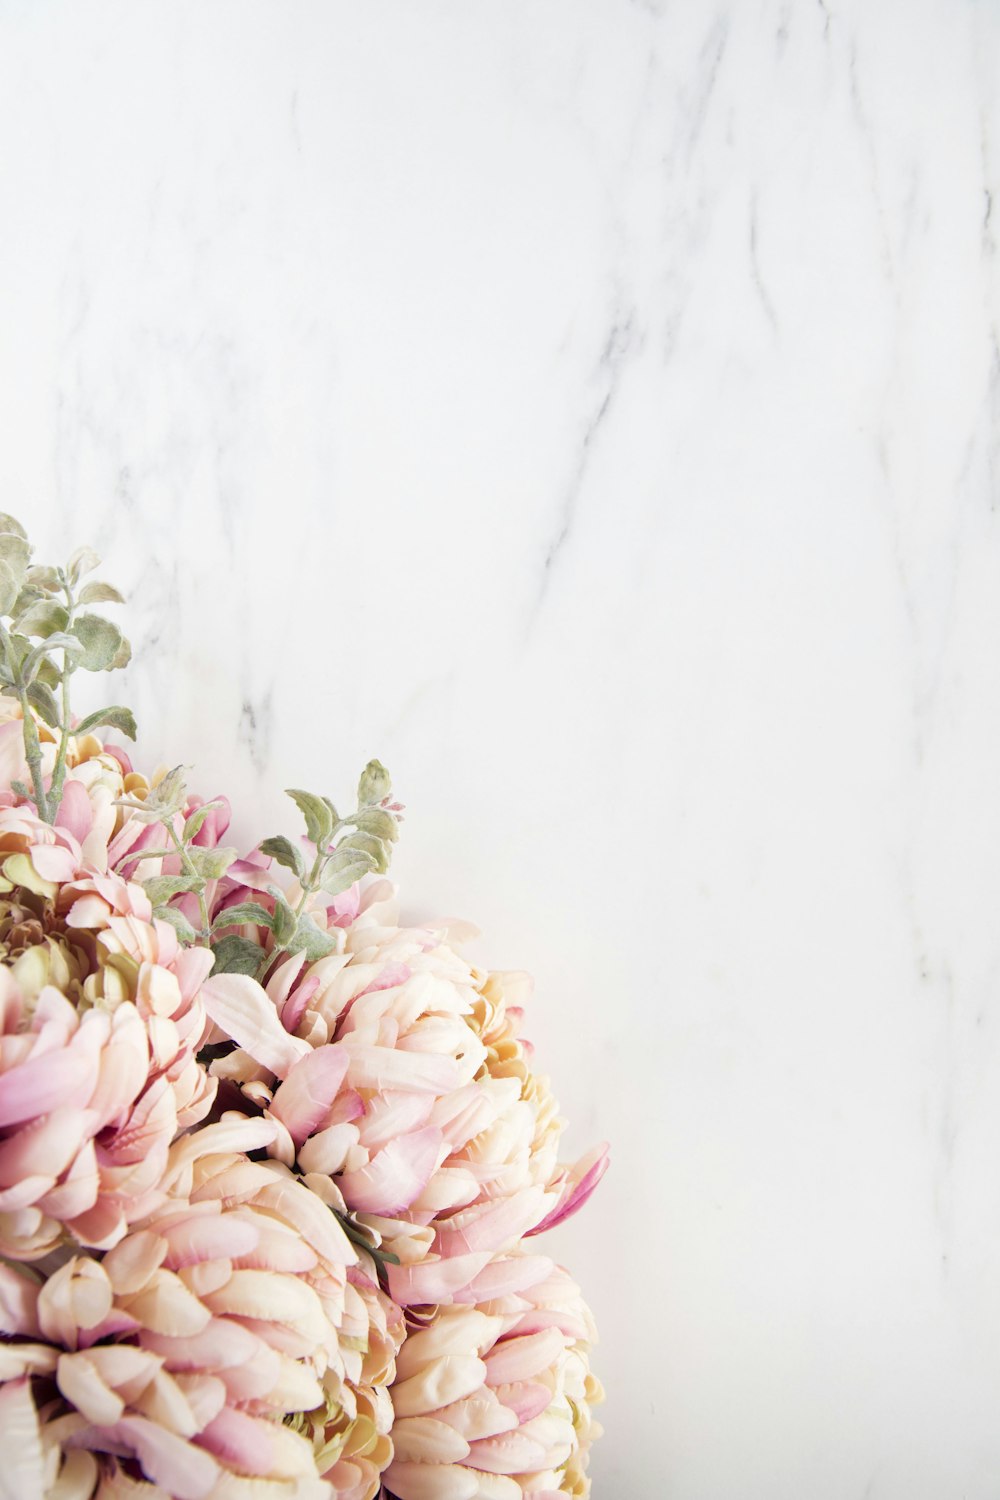 1K+ Floral Background Pictures | Download Free Images on Unsplash